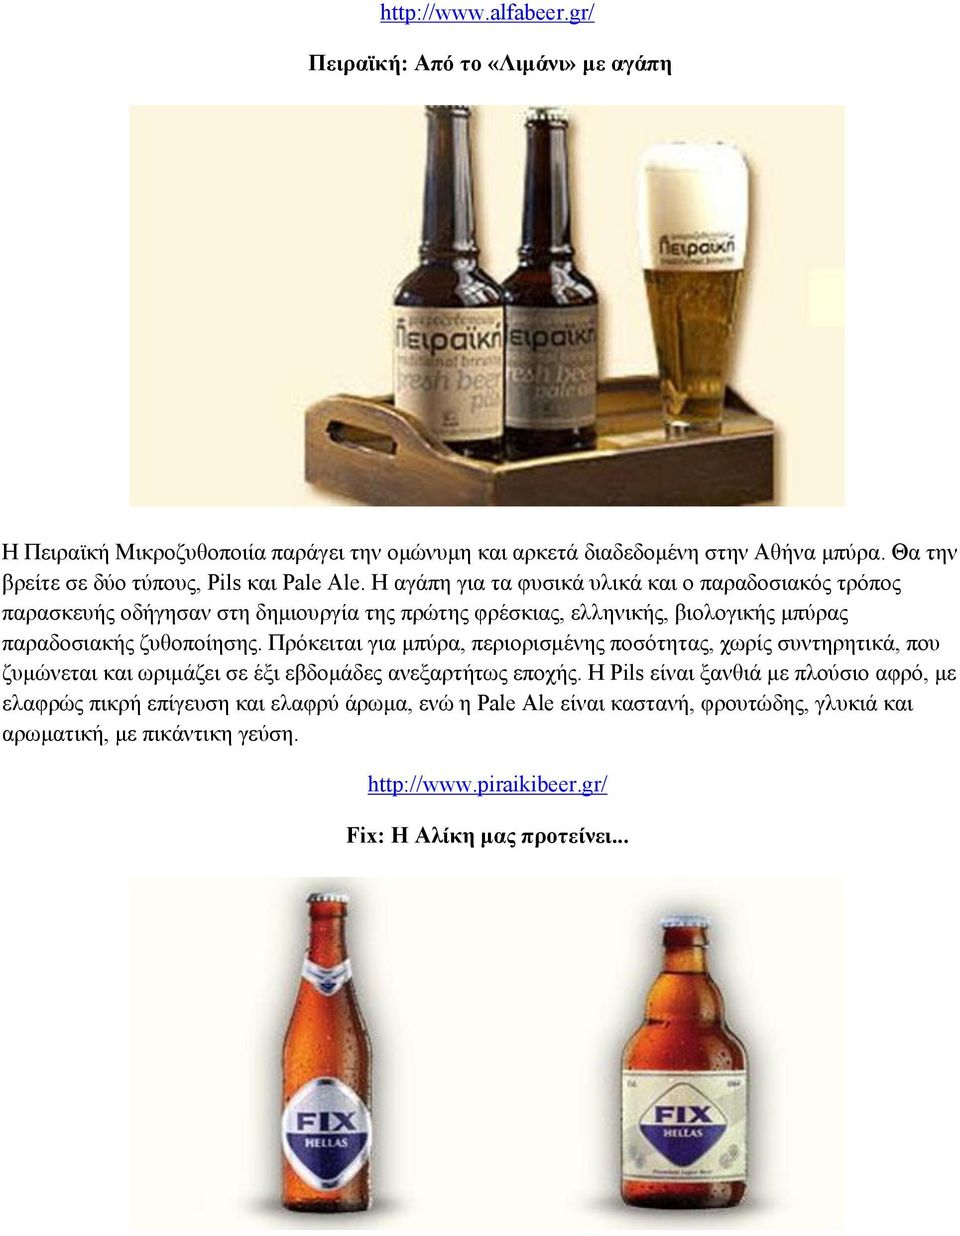 Η αγάπη για τα φυσικά υλικά και o παραδοσιακός τρόπος παρασκευής οδήγησαν στη δημιουργία της πρώτης φρέσκιας, ελληνικής, βιολογικής μπύρας παραδοσιακής ζυθοποίησης.